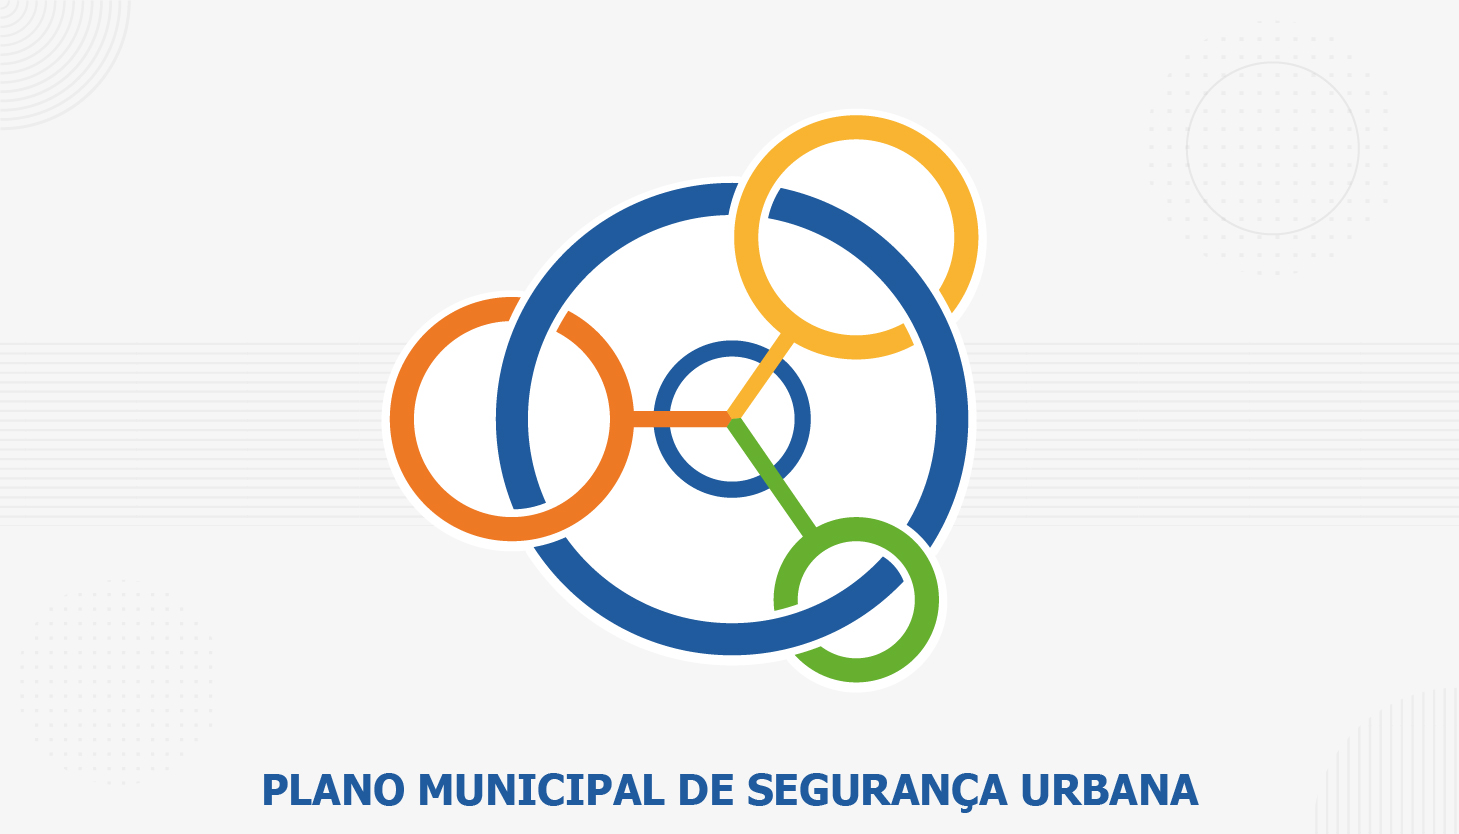 A Secretaria Municipal de Segurança Urbana realizará, entre os dias 4 e 13 de abril, os debates do Plano de Segurança Urbana Municipal (PSUM) com mais de 30 especialistas renomados na área de segurança.